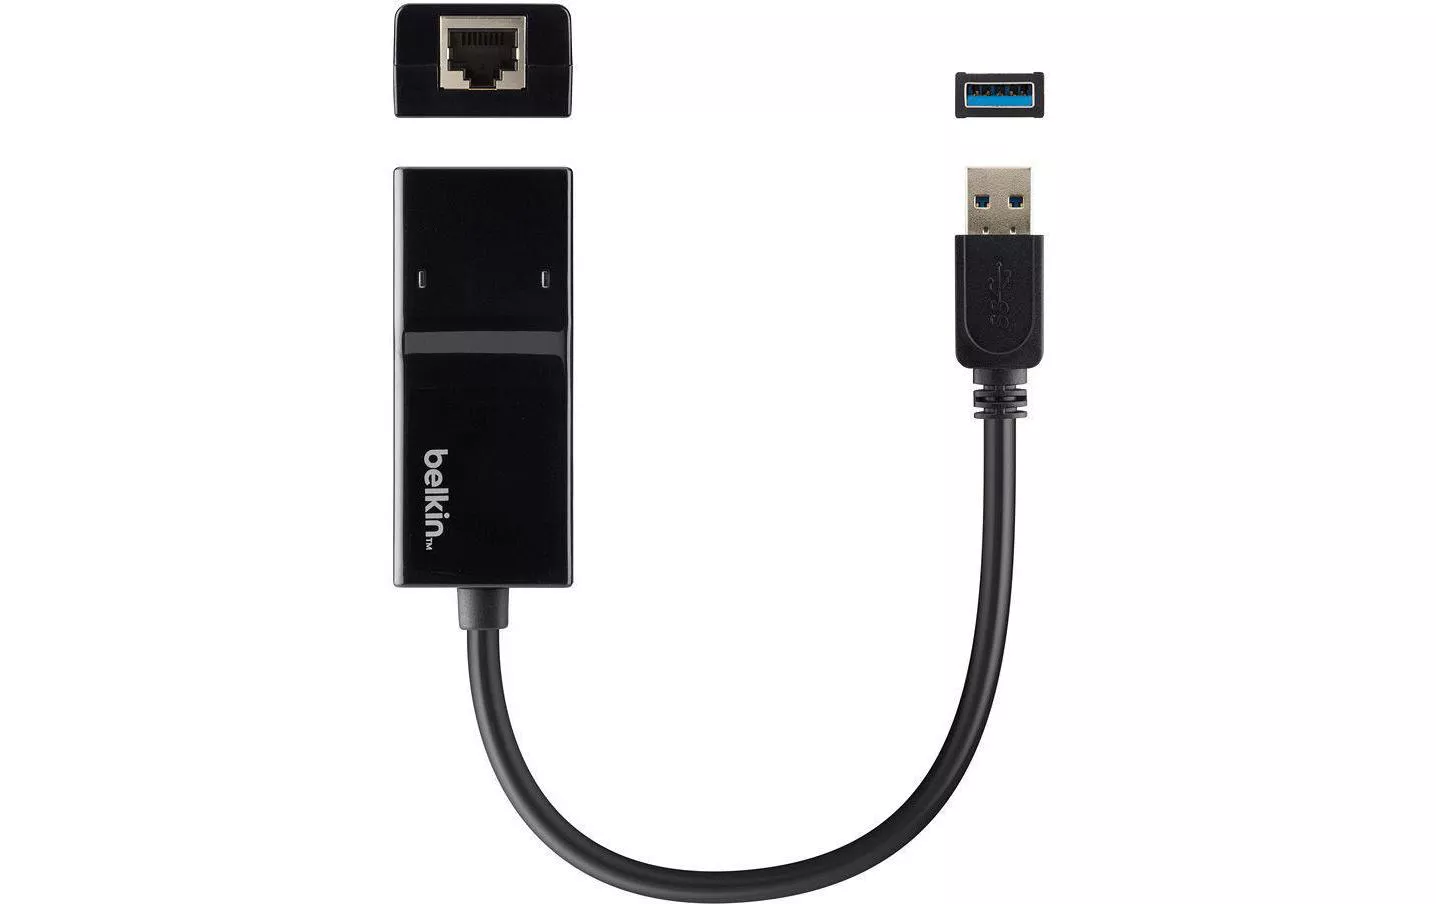 Netzwerk-Adapter USB 3.0 - RJ45 1 Gbps USB 3.0